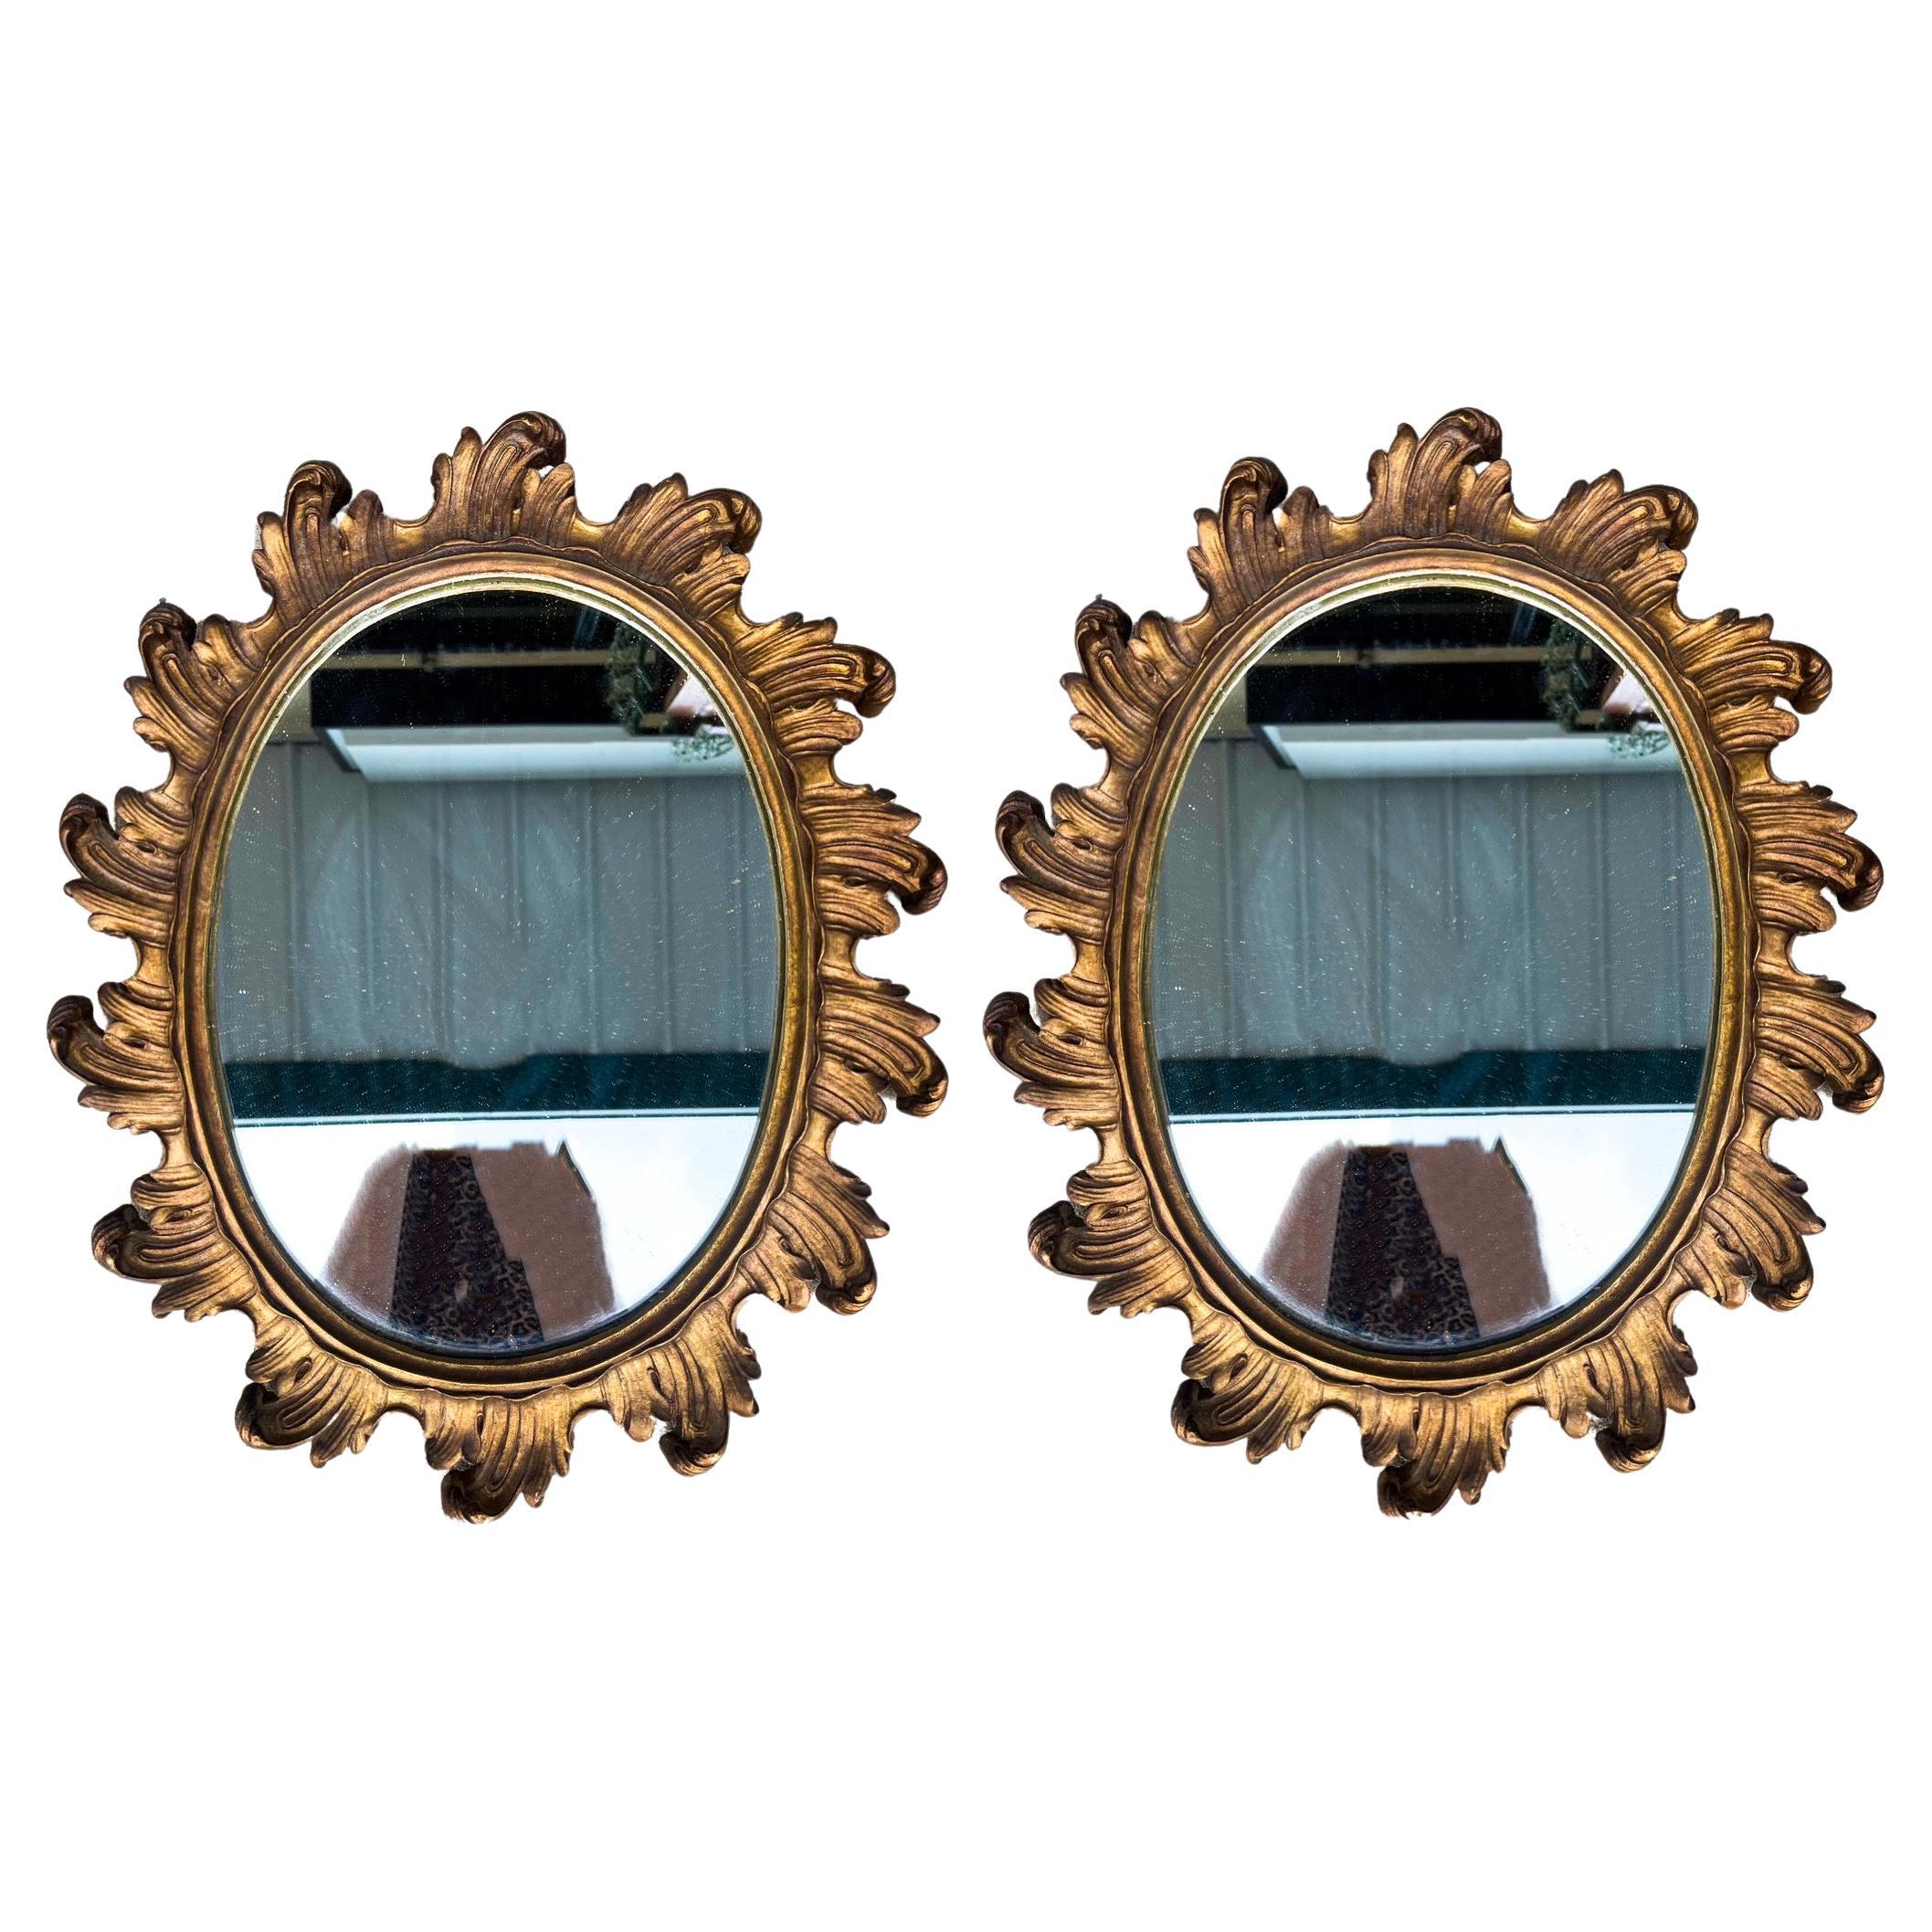 Il s'agit d'une belle paire de miroirs en bois doré sculpté à bords festonnés de l'époque Hollywood Regency. Les dos sont doublés de feutre. Ils ne portent aucune marque et sont en très bon état.